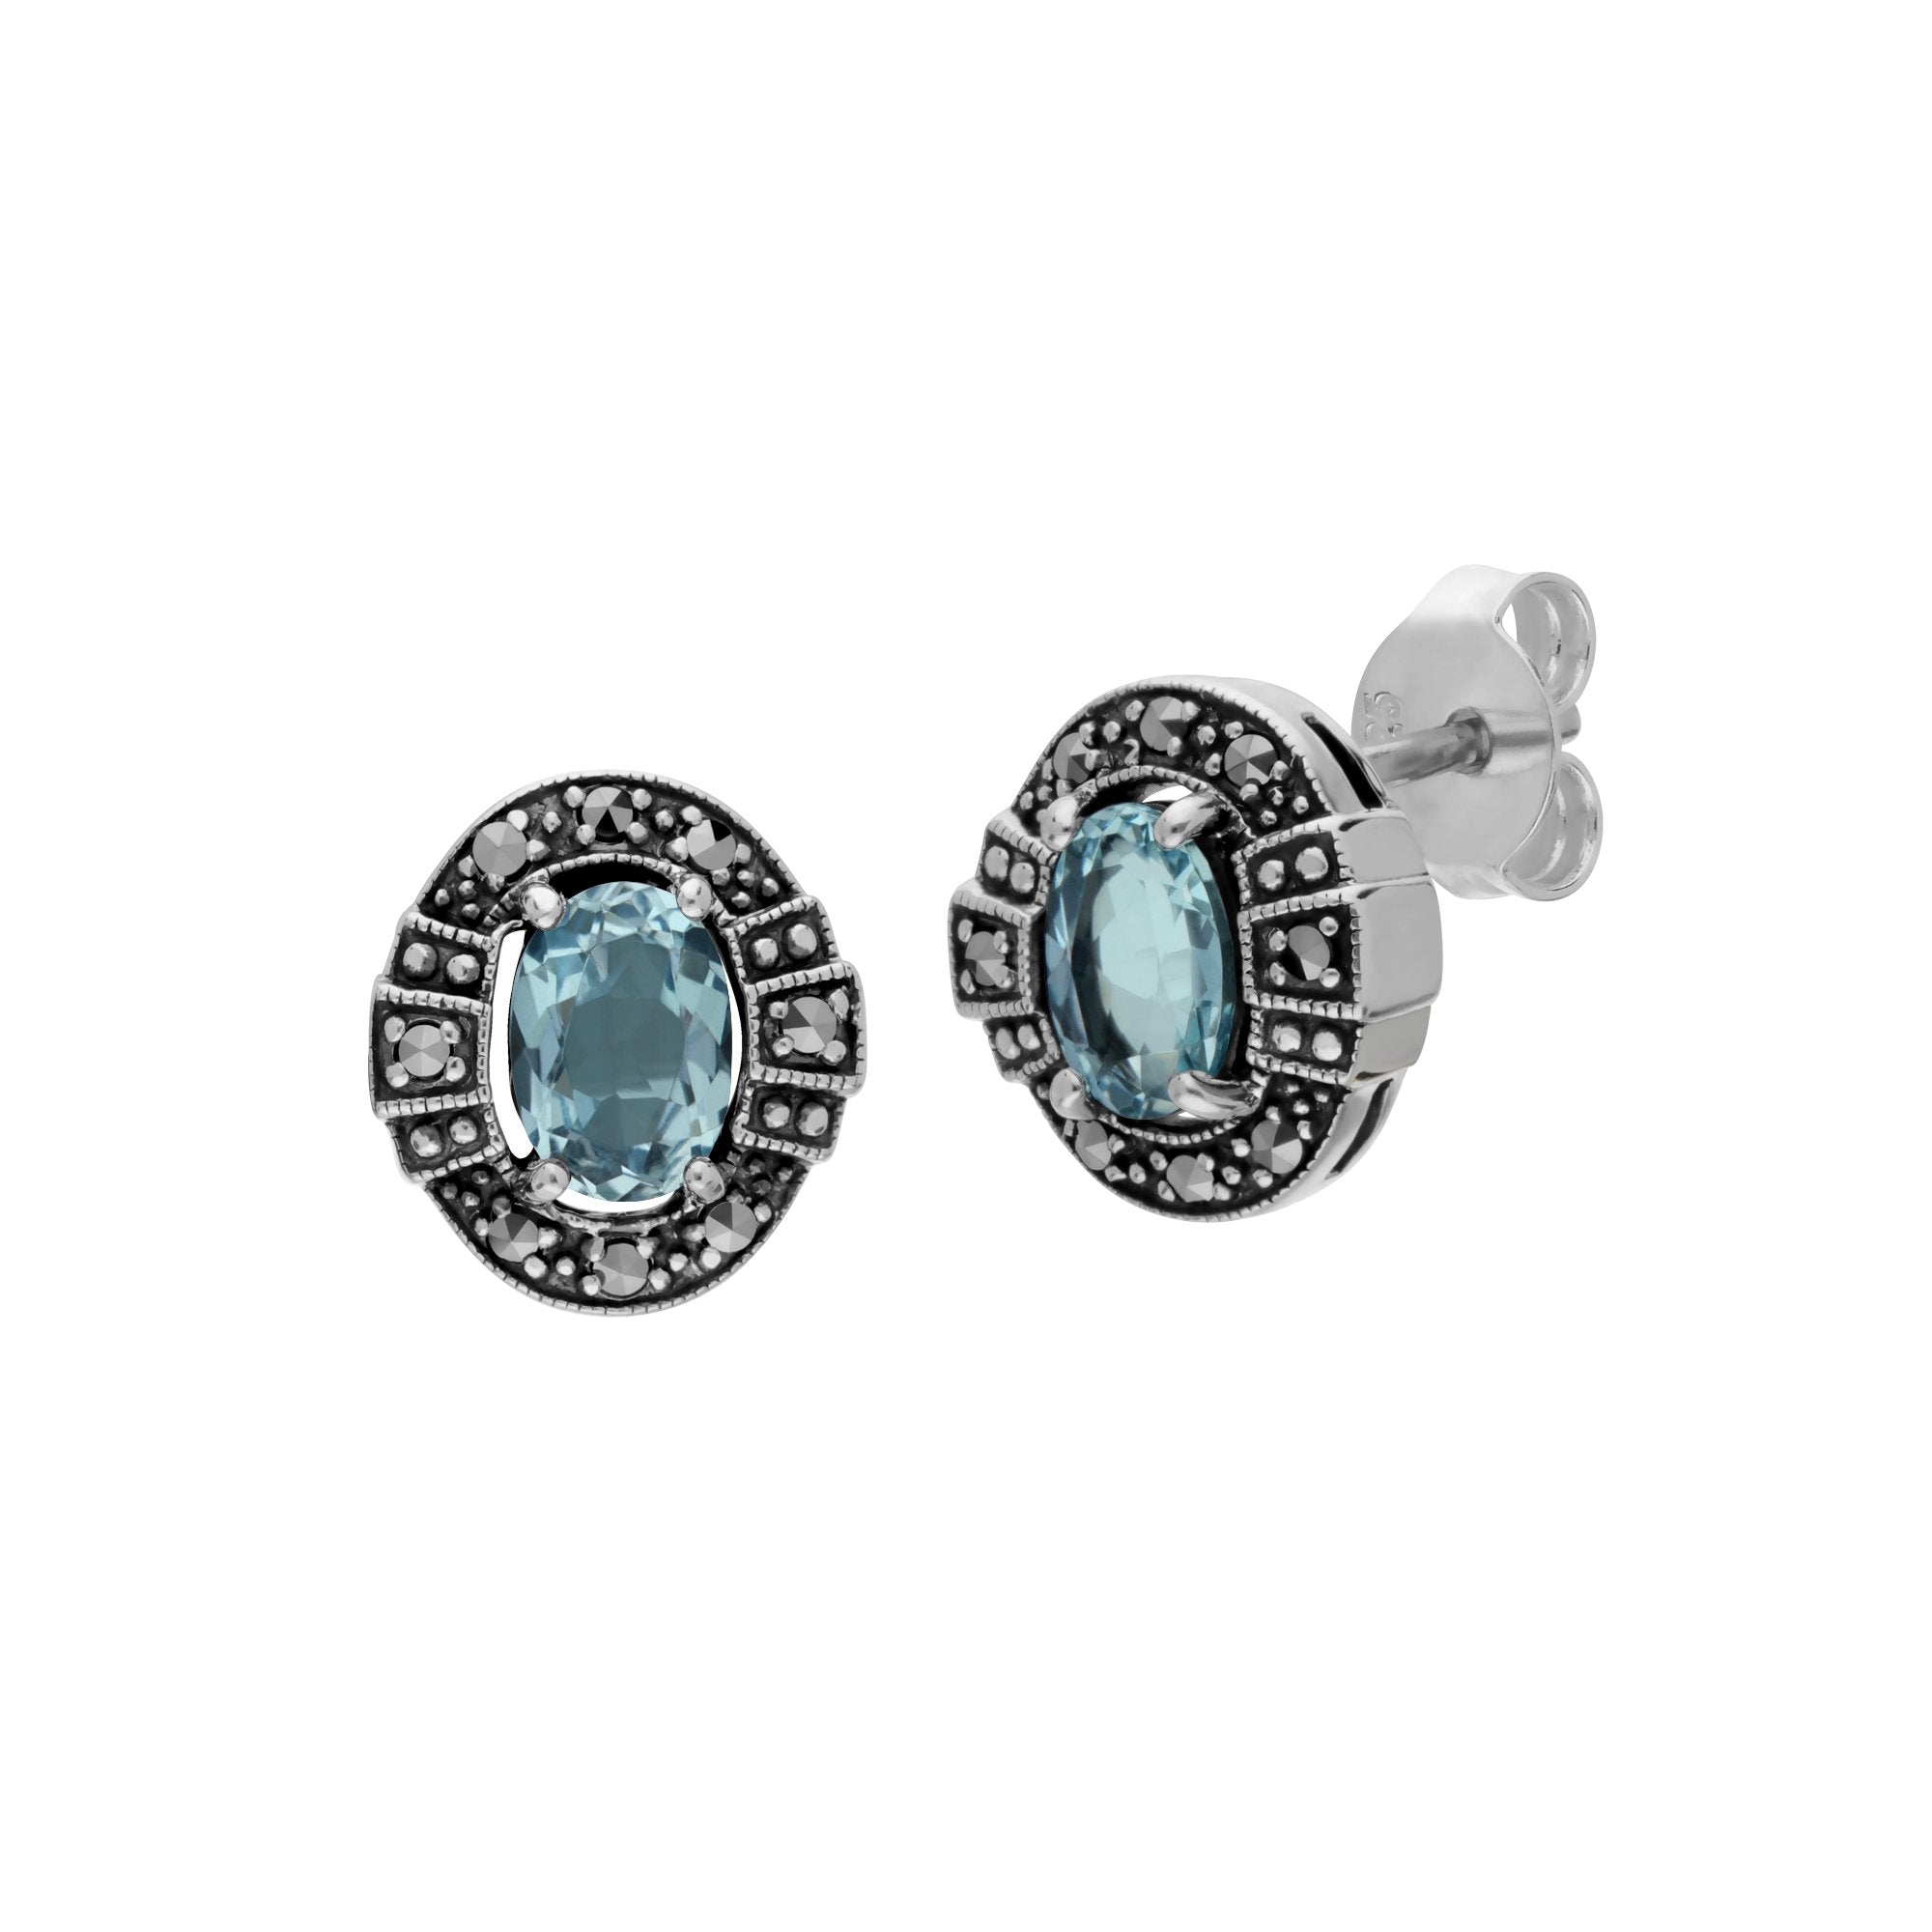 Art Deco Style Oval Blue Topaz & Marcasite Stud Earrings in 925 Sterling Silver